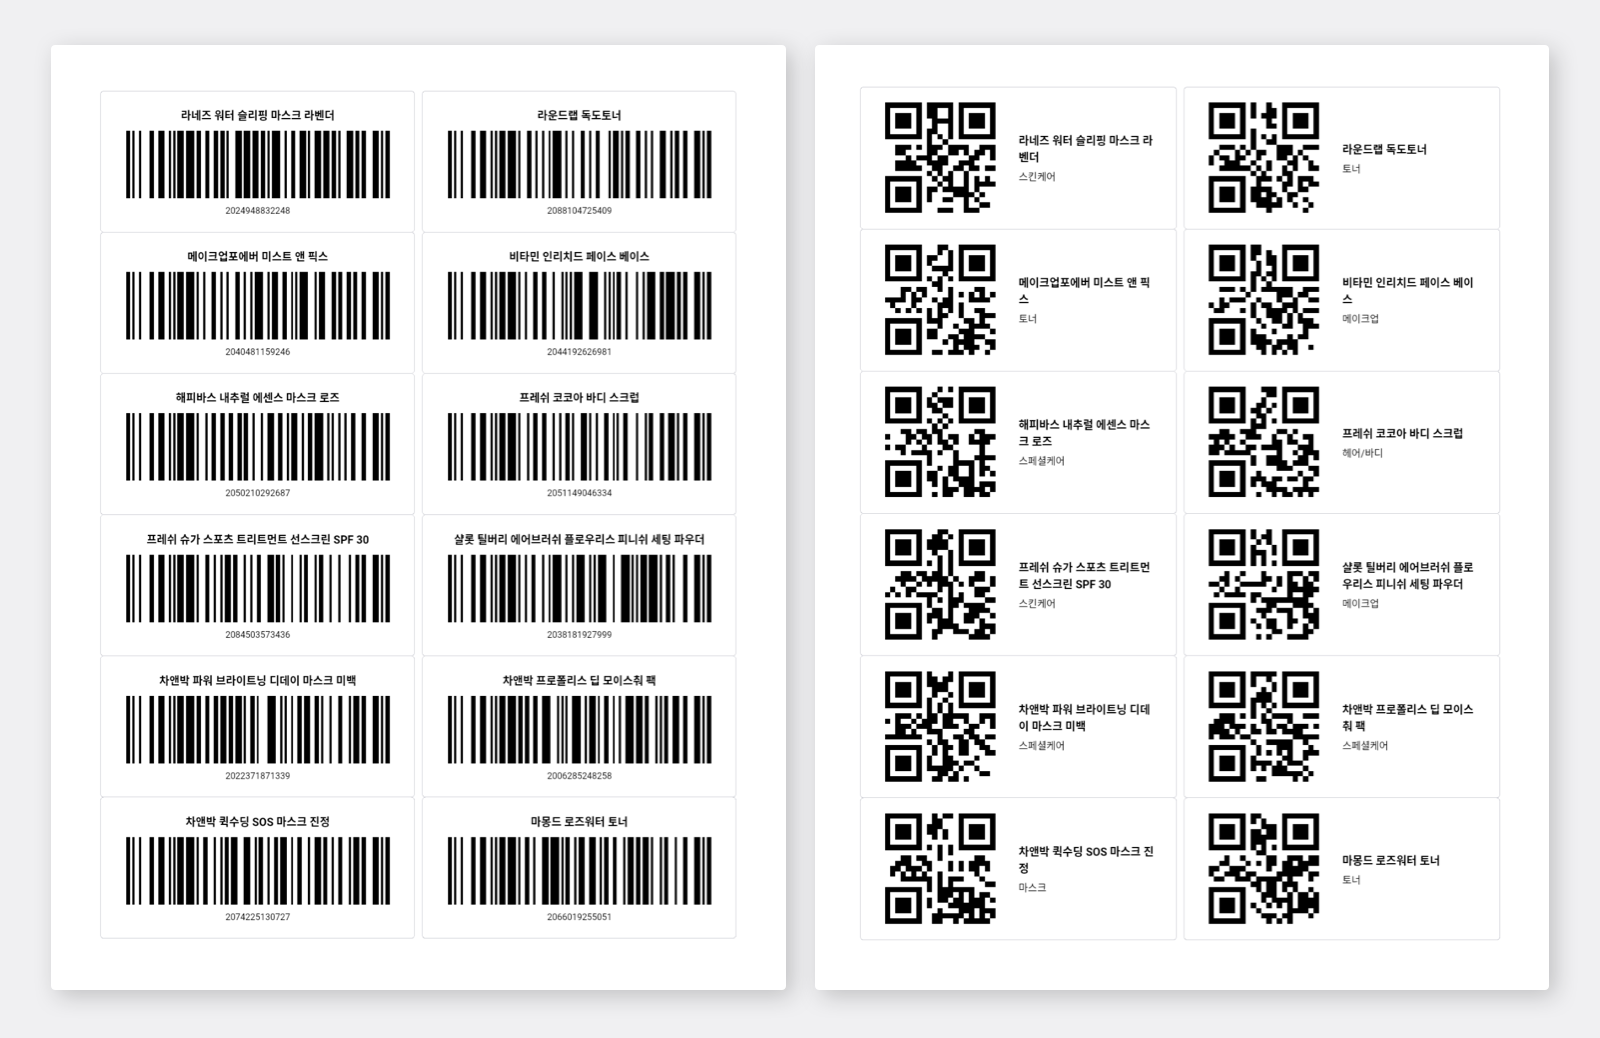 다양한 바코드 종류를 인쇄할 수 있는 박스히어로 무료 바코드 인쇄툴.